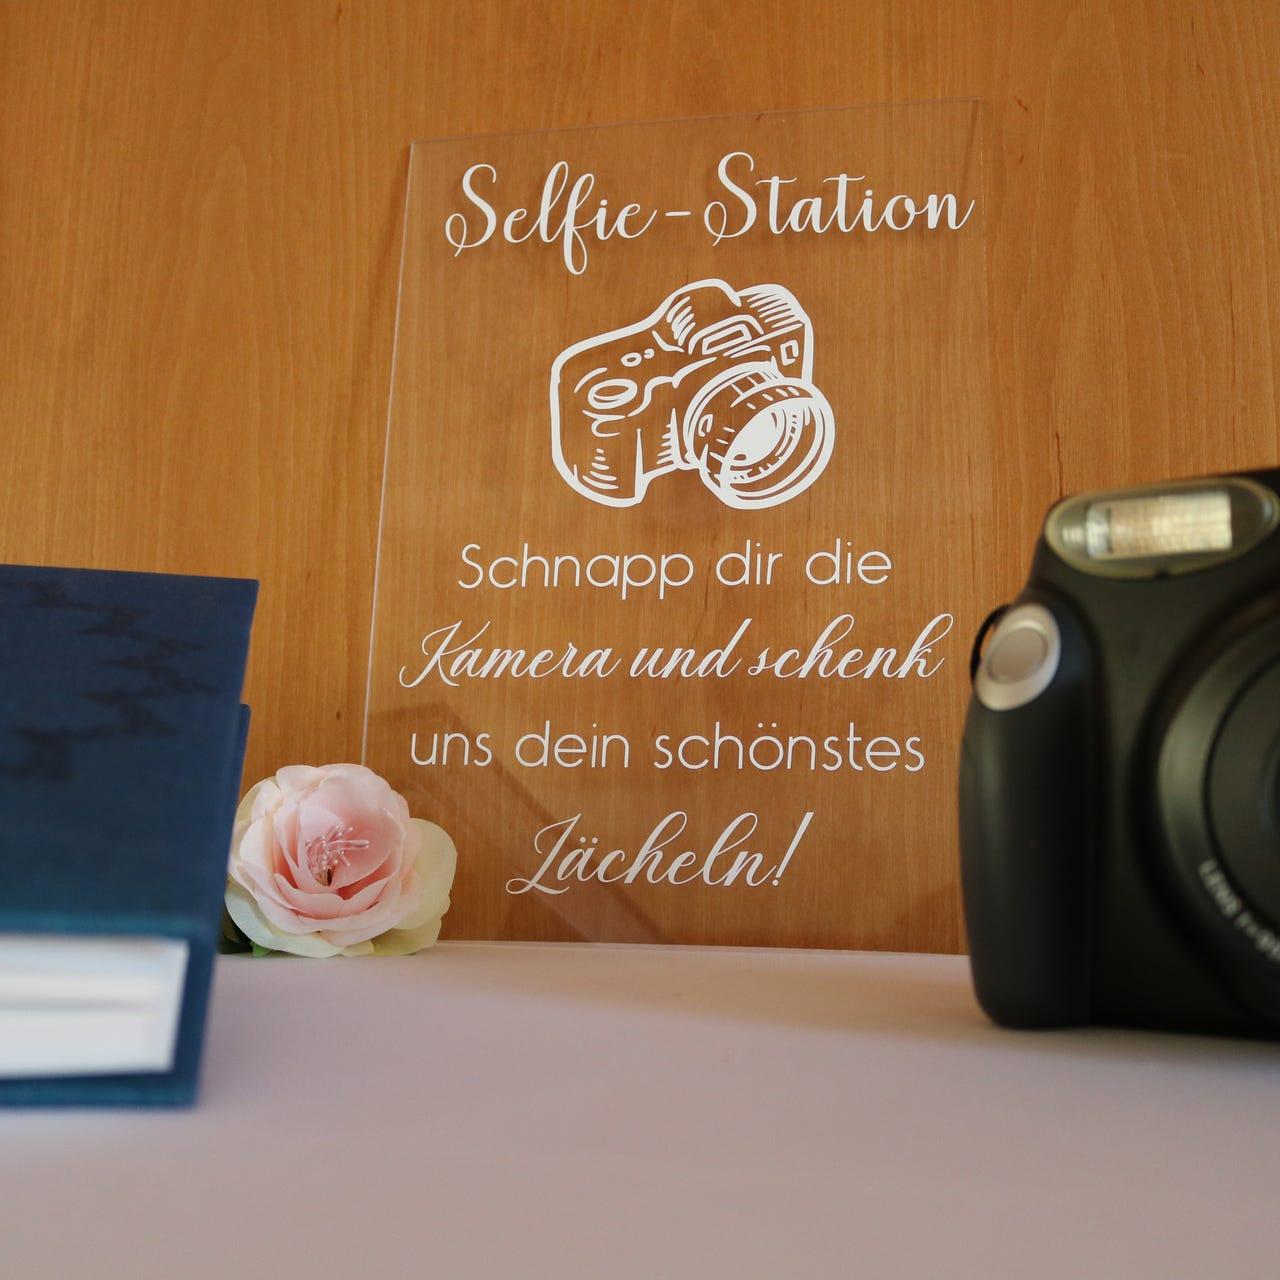 Selfie-Station